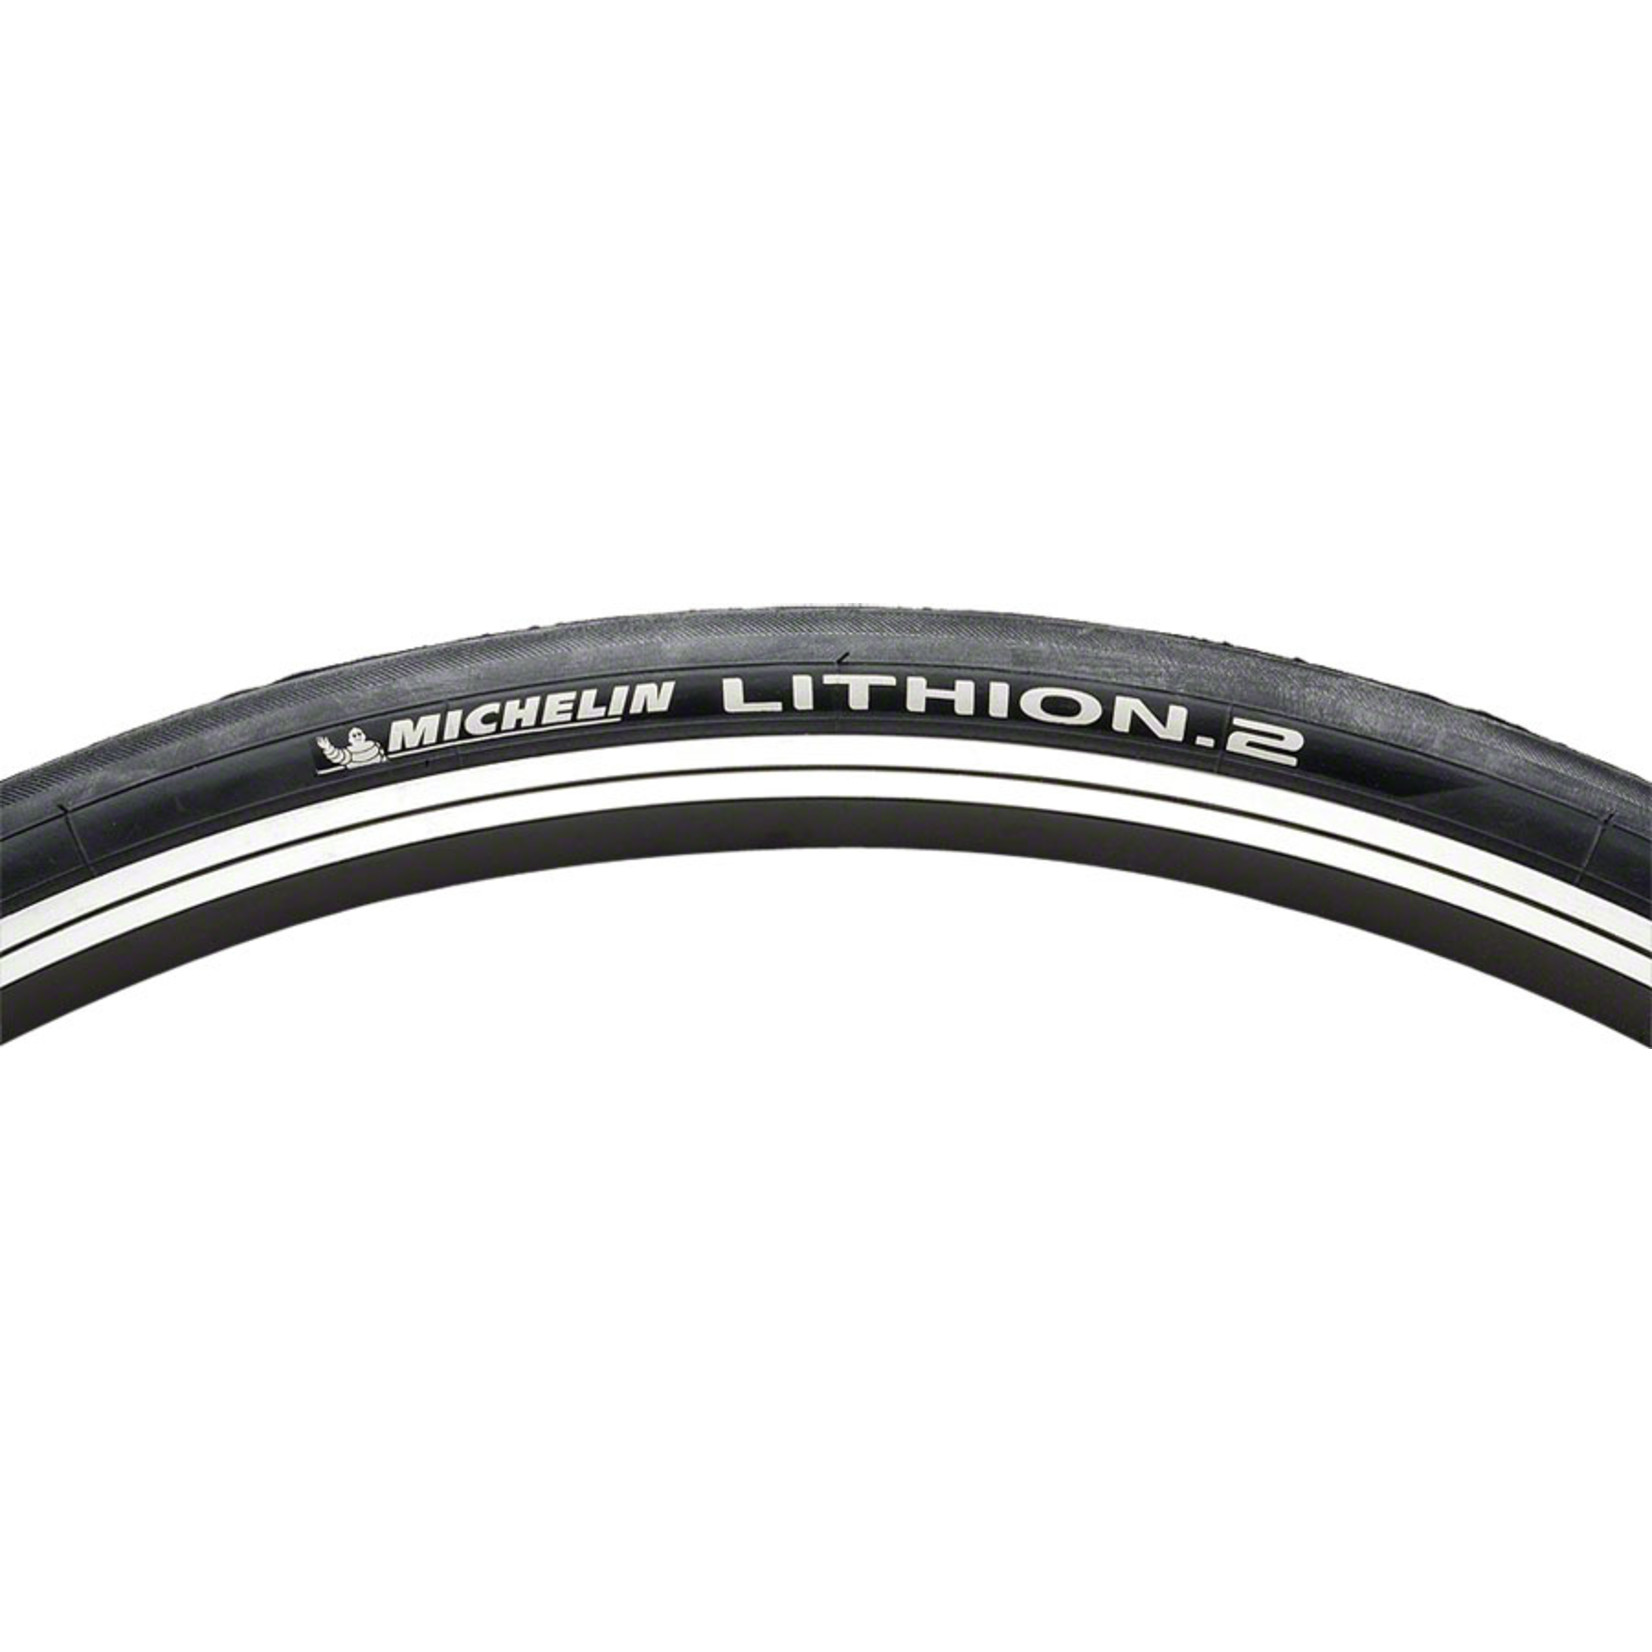 Michelin Michelin Lithion 2 Tire - 700 x 25 Clincher Folding  Black/Dark Gray